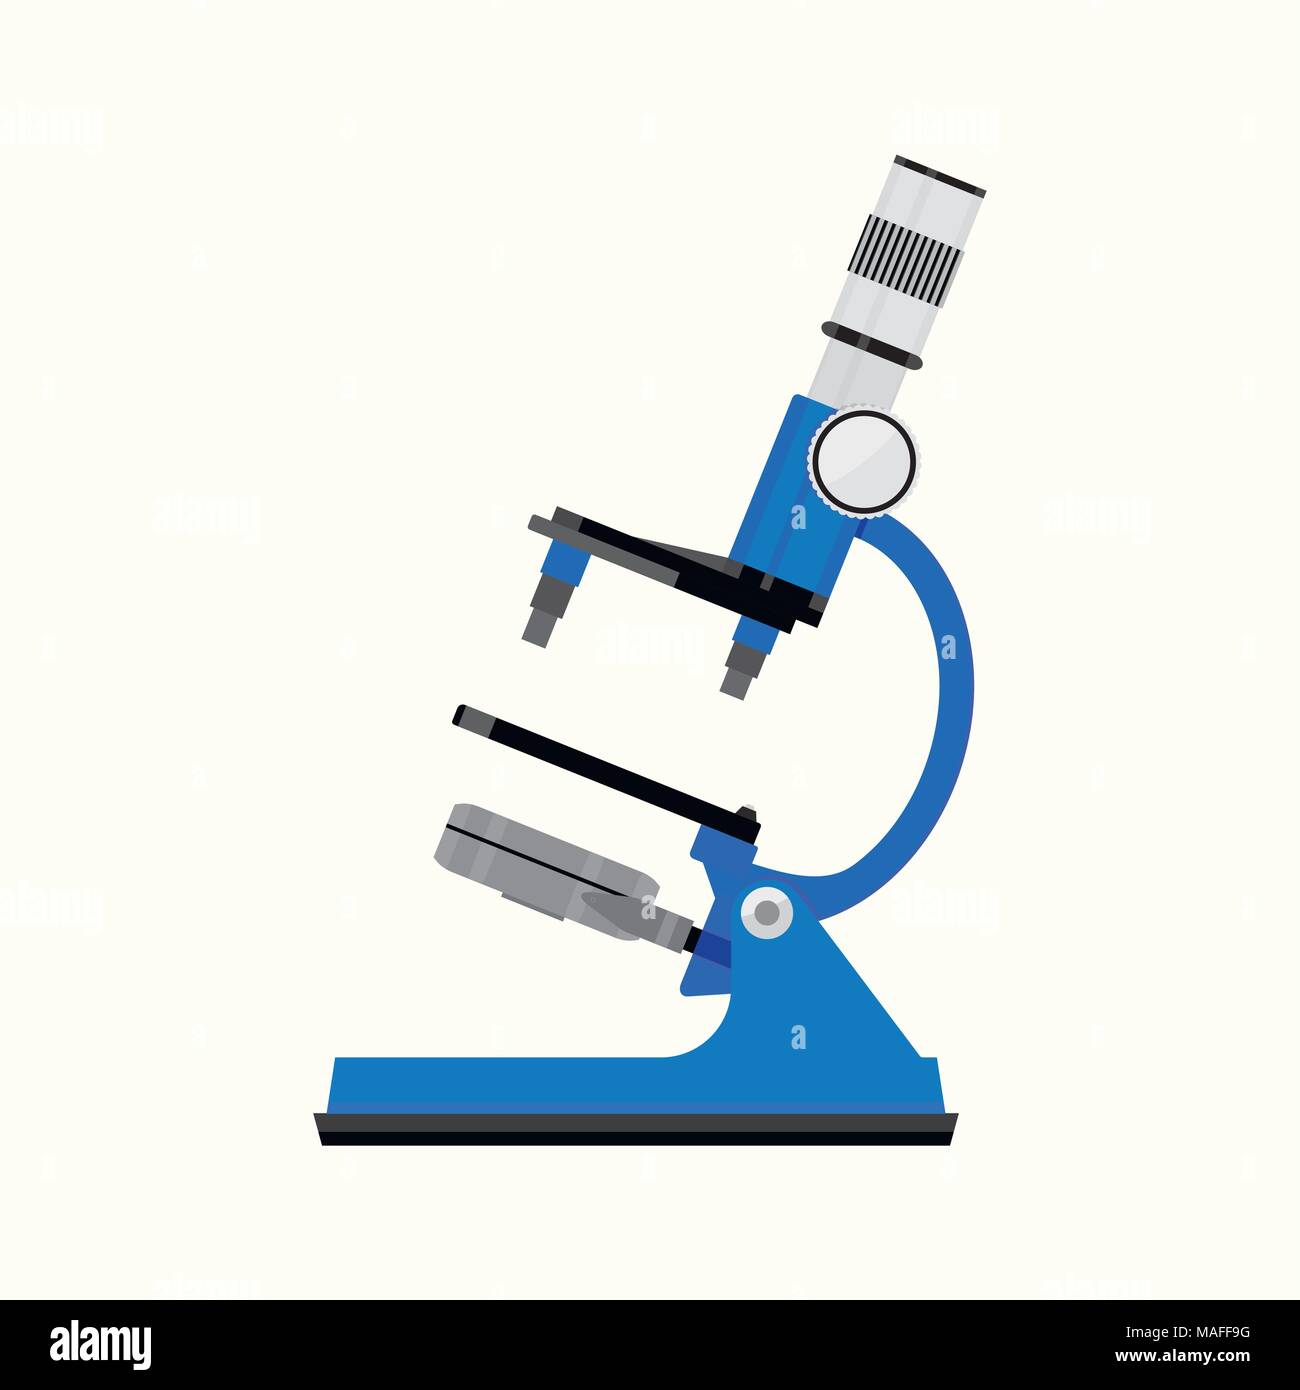 Mikroskop isoliert. Objektträger und Wissenschaftler. Mikroskop Ausrüstung Instrument wissenschaftlicher für Chemie und Medizin Experiment, Vektor krank Stock Vektor